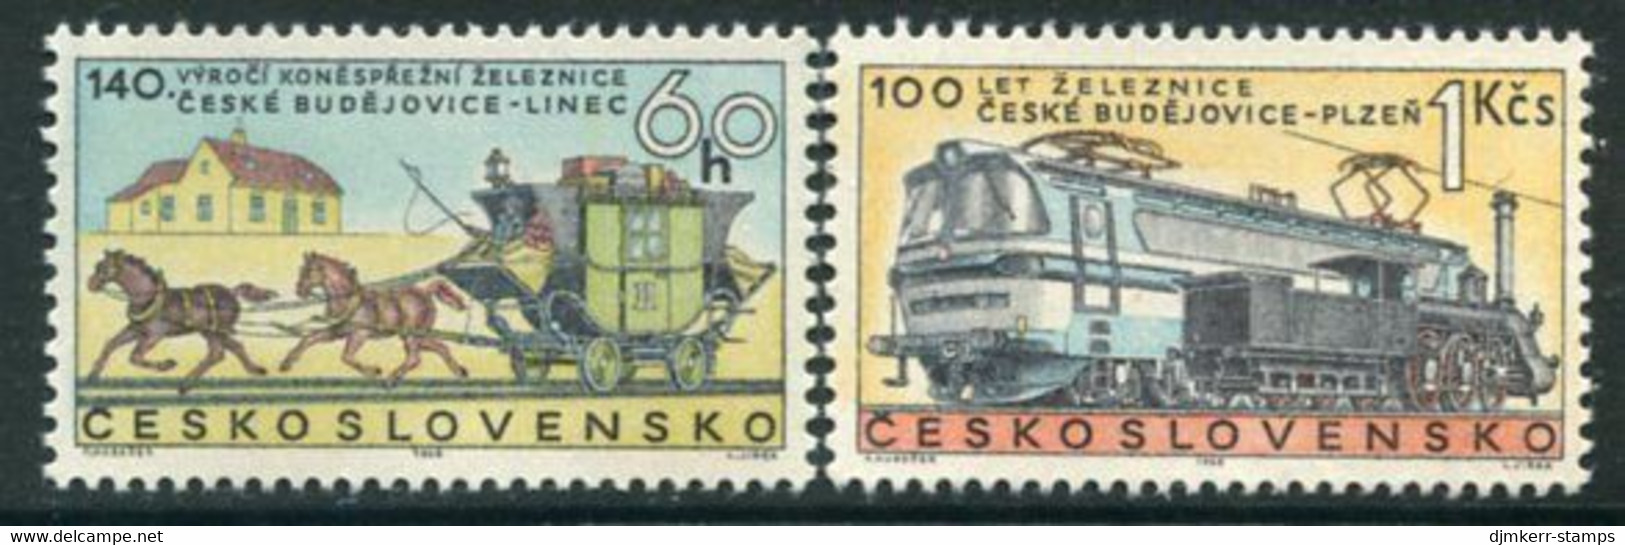 CZECHOSLOVAKIA 1968 Railway Anniversaries MNH / **   Michel 1806-07 - Ongebruikt